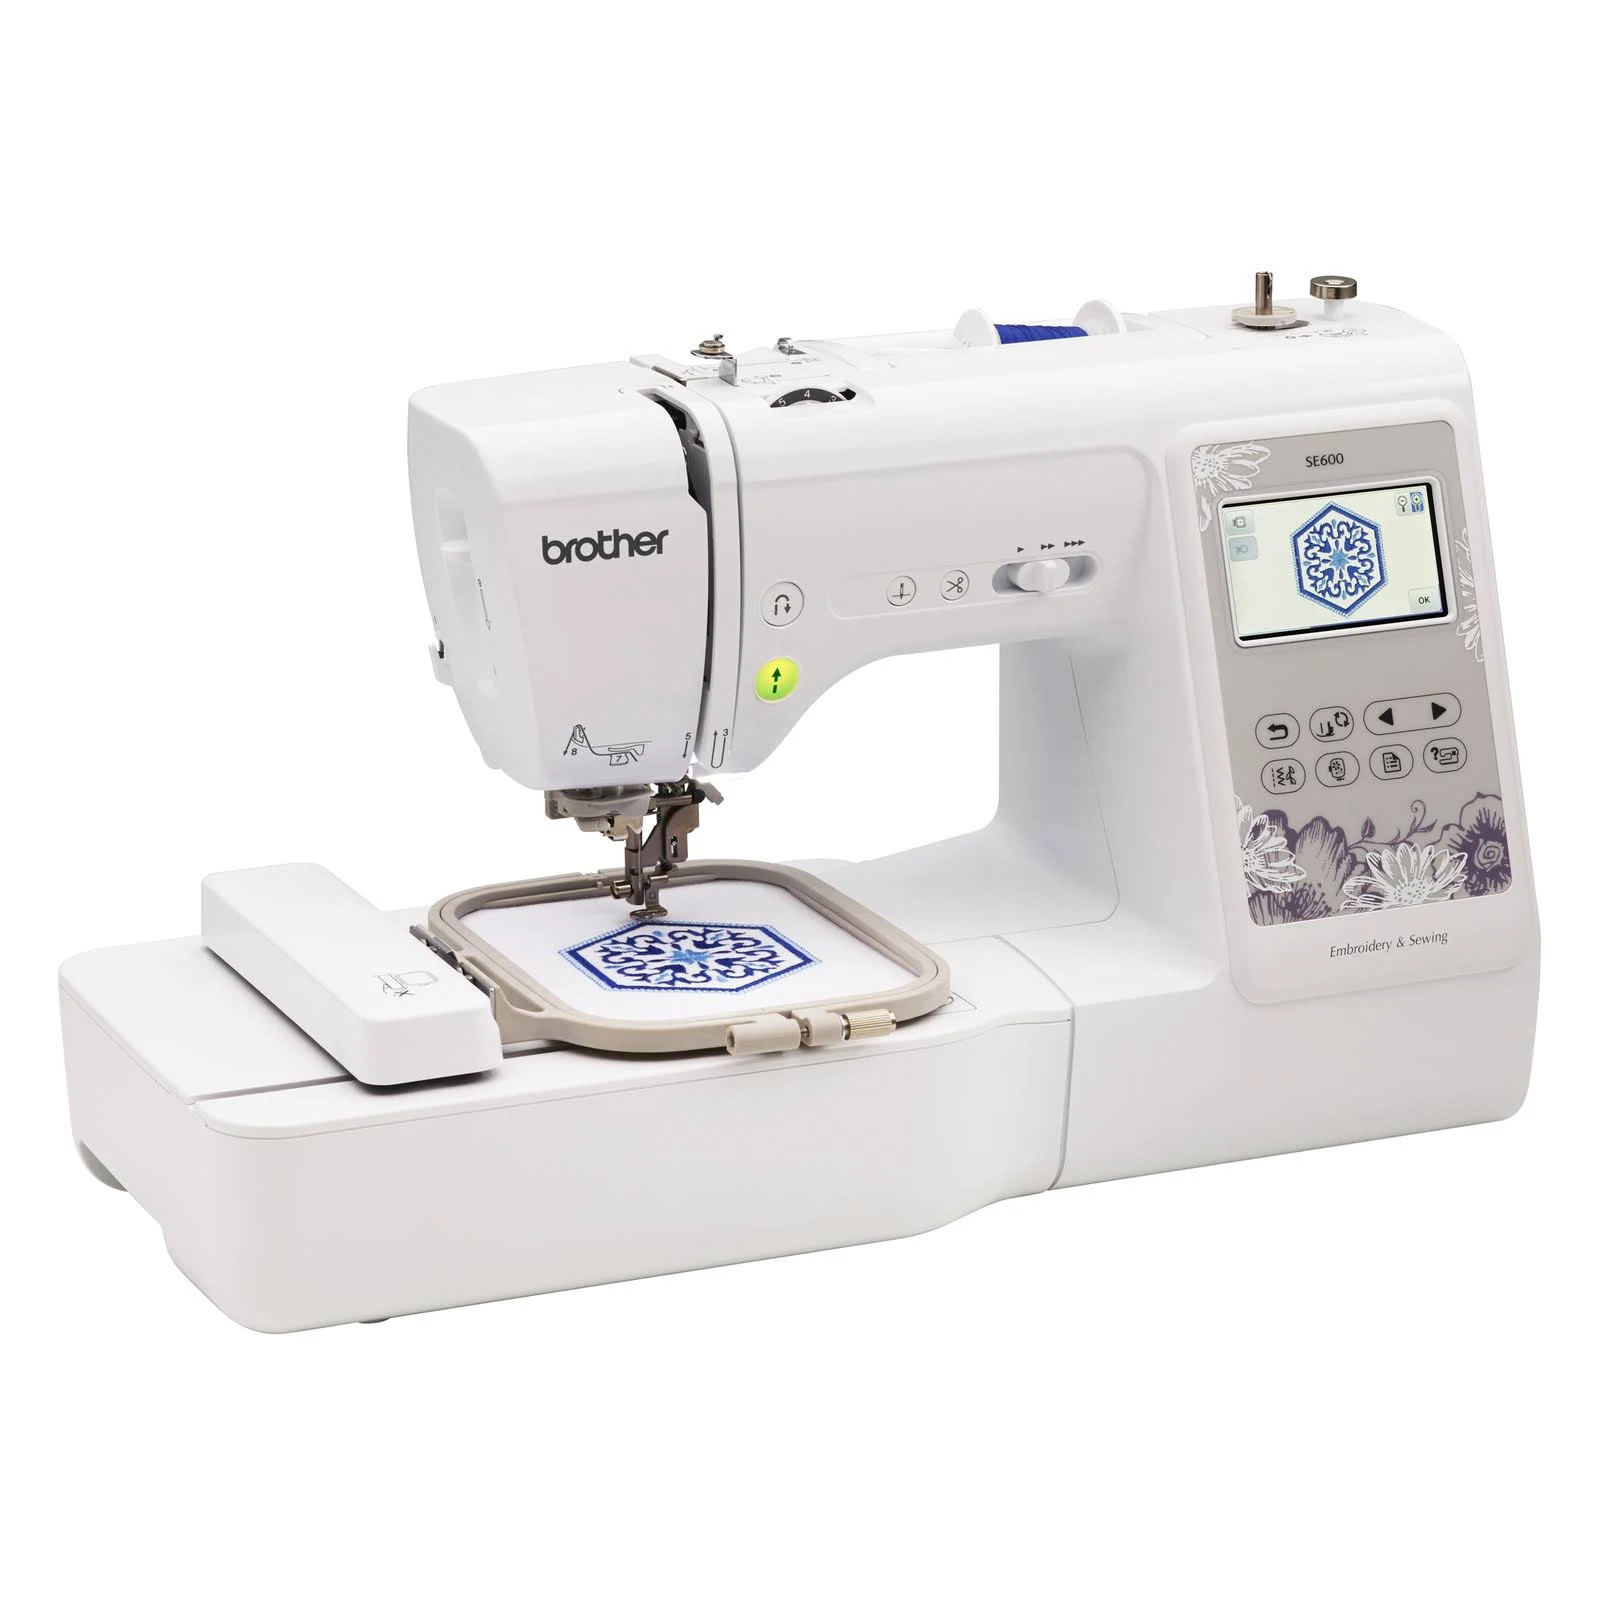 Brother SE600 Embroidery & Sewing Machine - Refurbished - Gift Guru